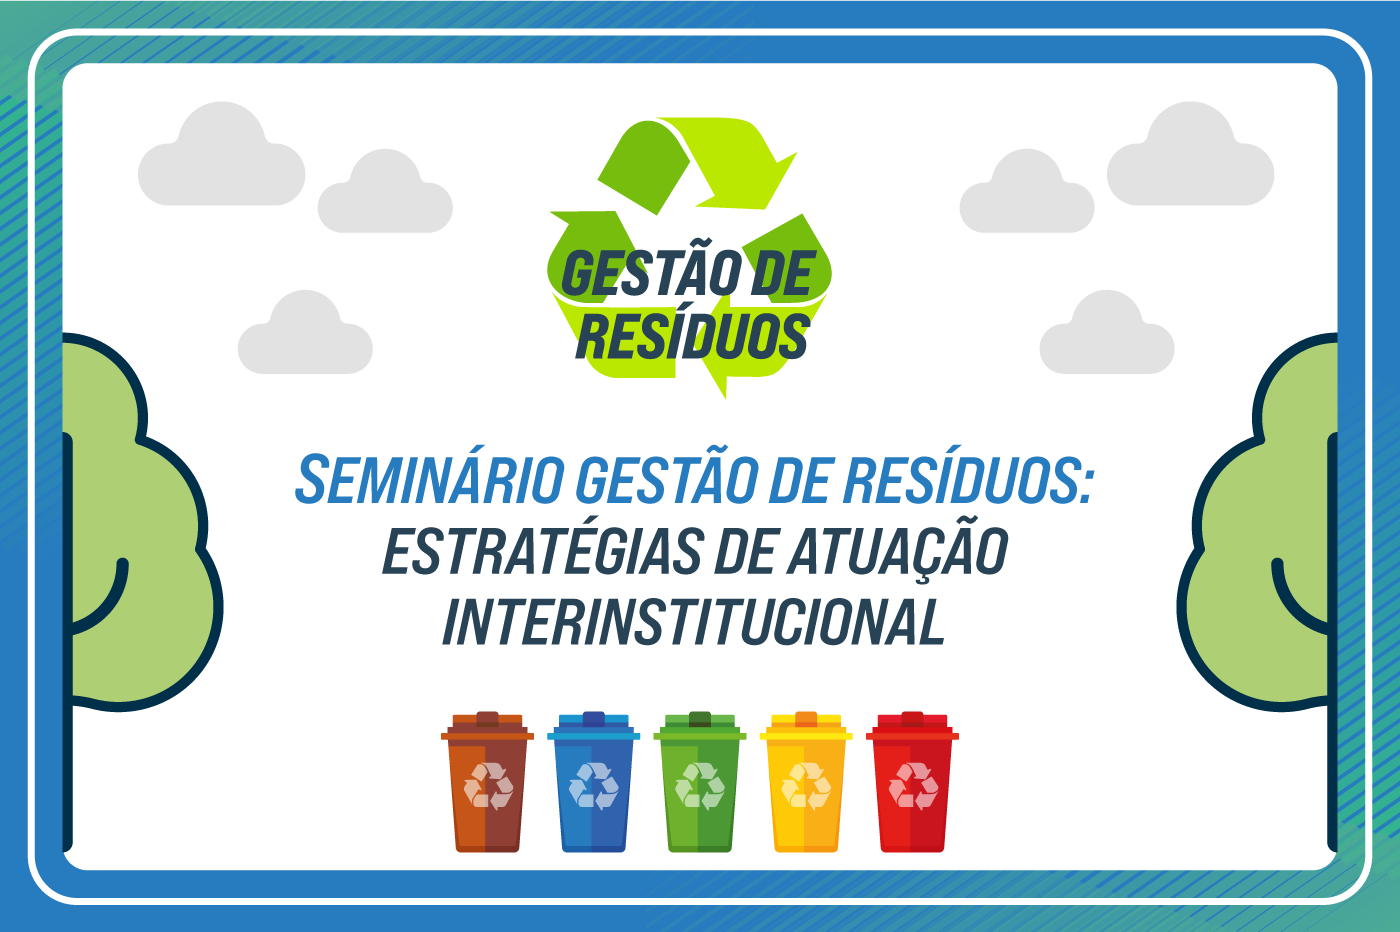 Inscrições abertas para o seminário “Gestão de resíduos: estratégias de atuação interinstitucional”